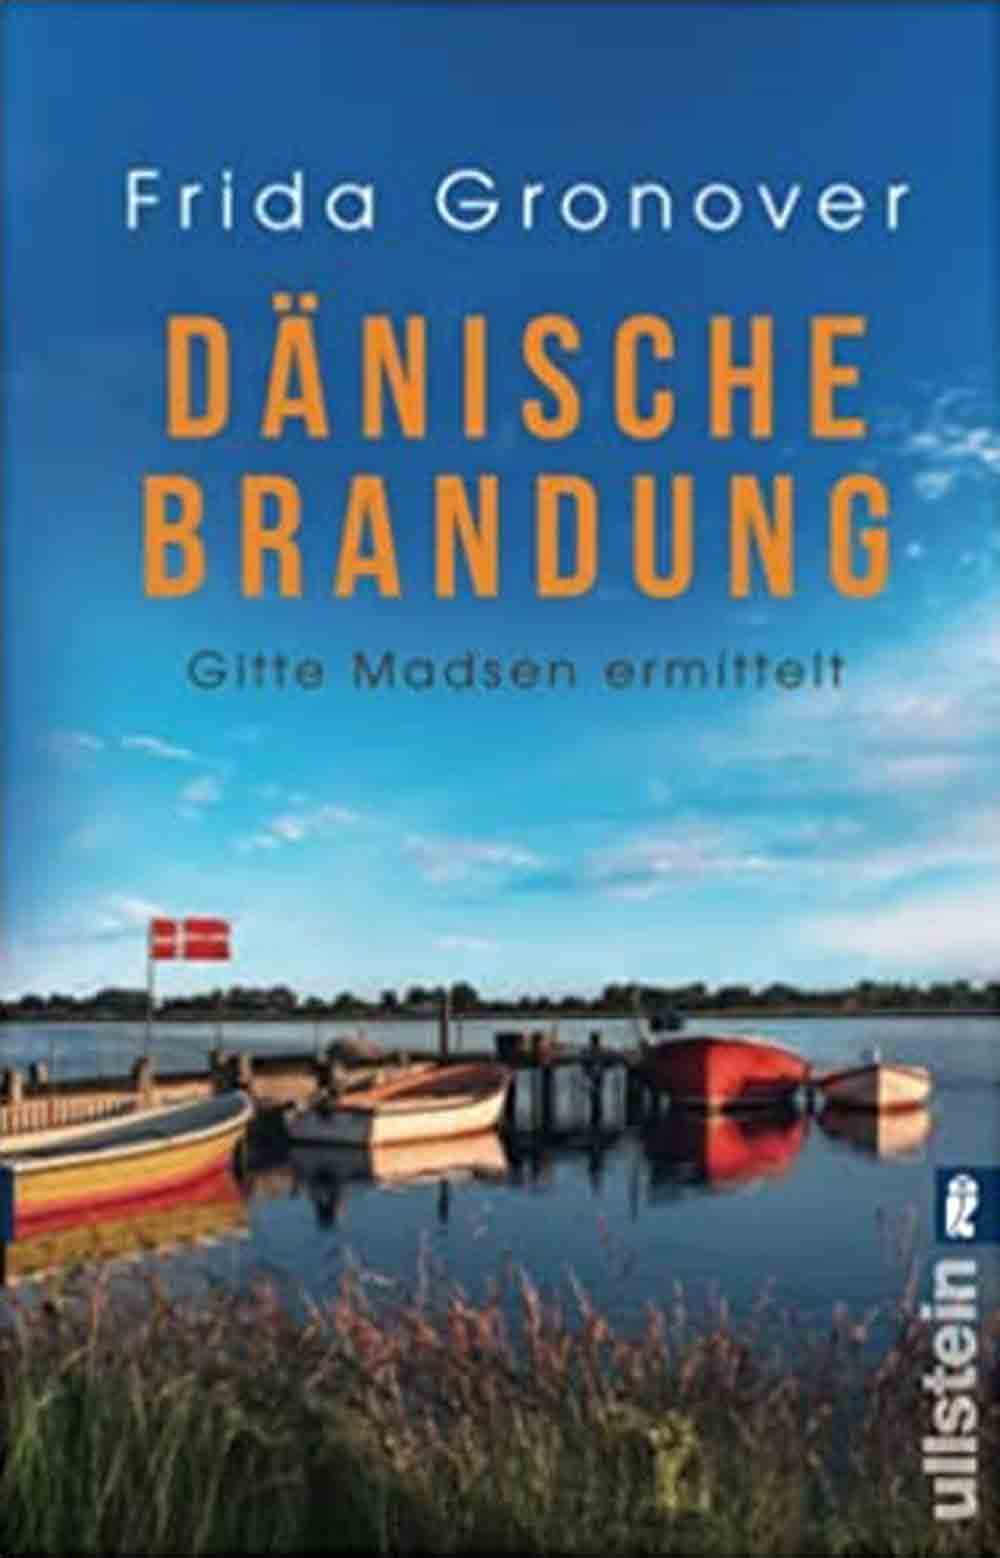 Lesetipps für Gütersloh, Dänische Brandung, Gitte Madsen ermittelt, der perfekte Urlaubskrimi für alle Dänemarkfans